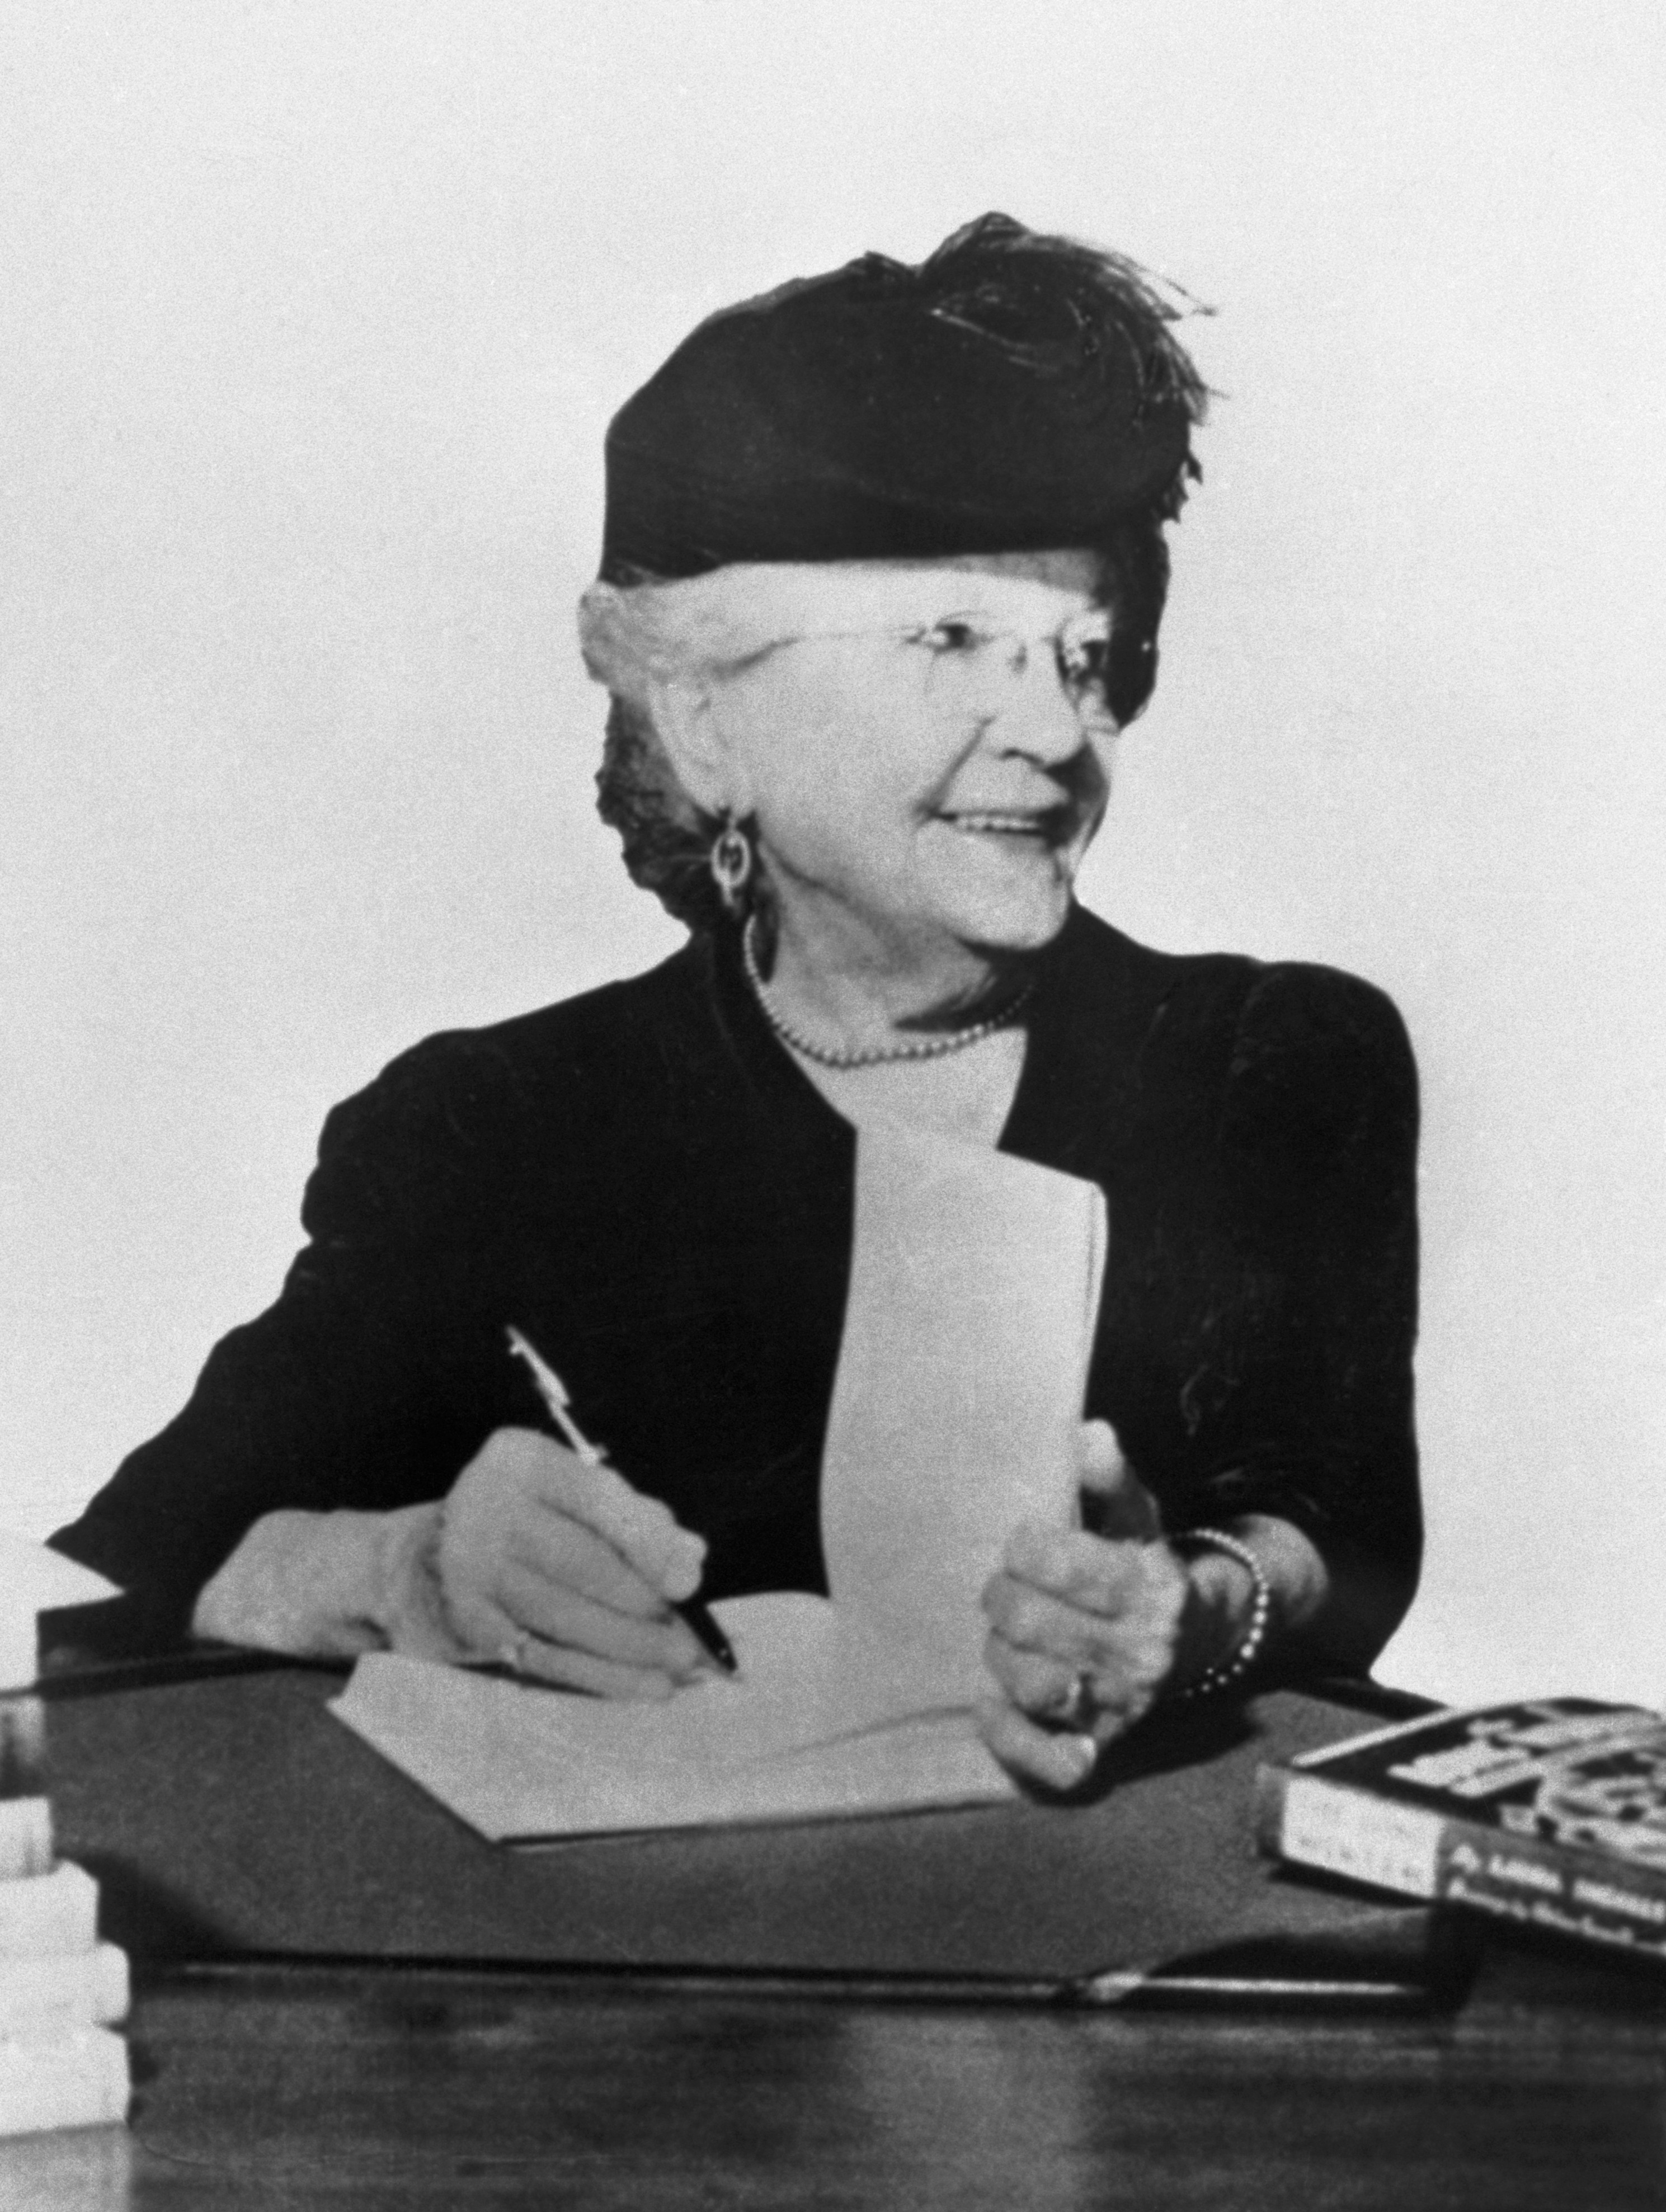 Laura Ingalls Wilder signing books ca. 1930s-1940s.